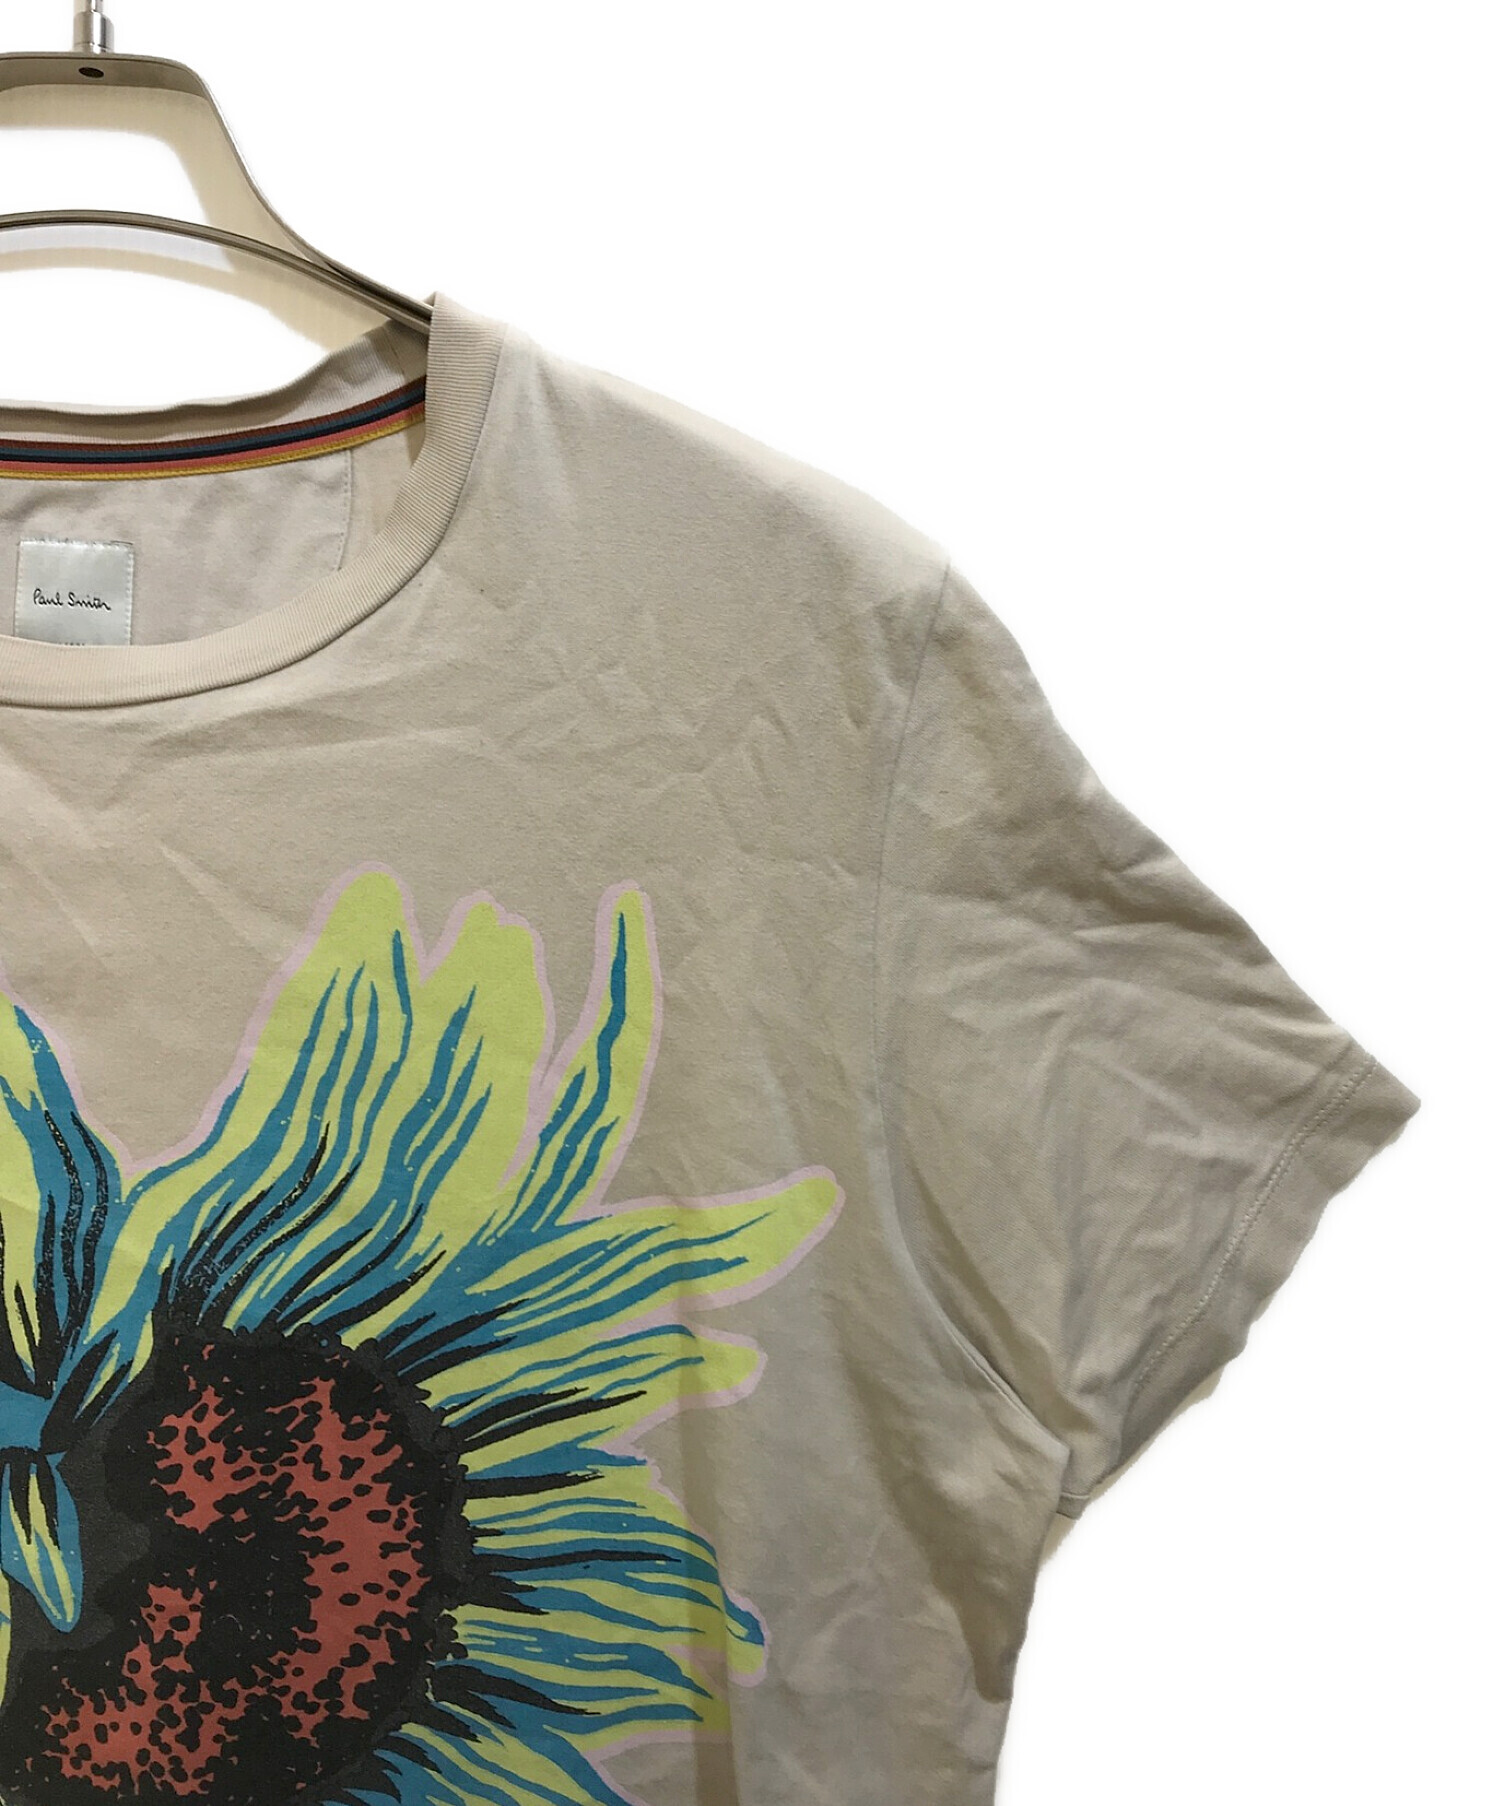 PAUL SMITH (ポールスミス) SunflowerプリントTシャツ ベージュ サイズ:L